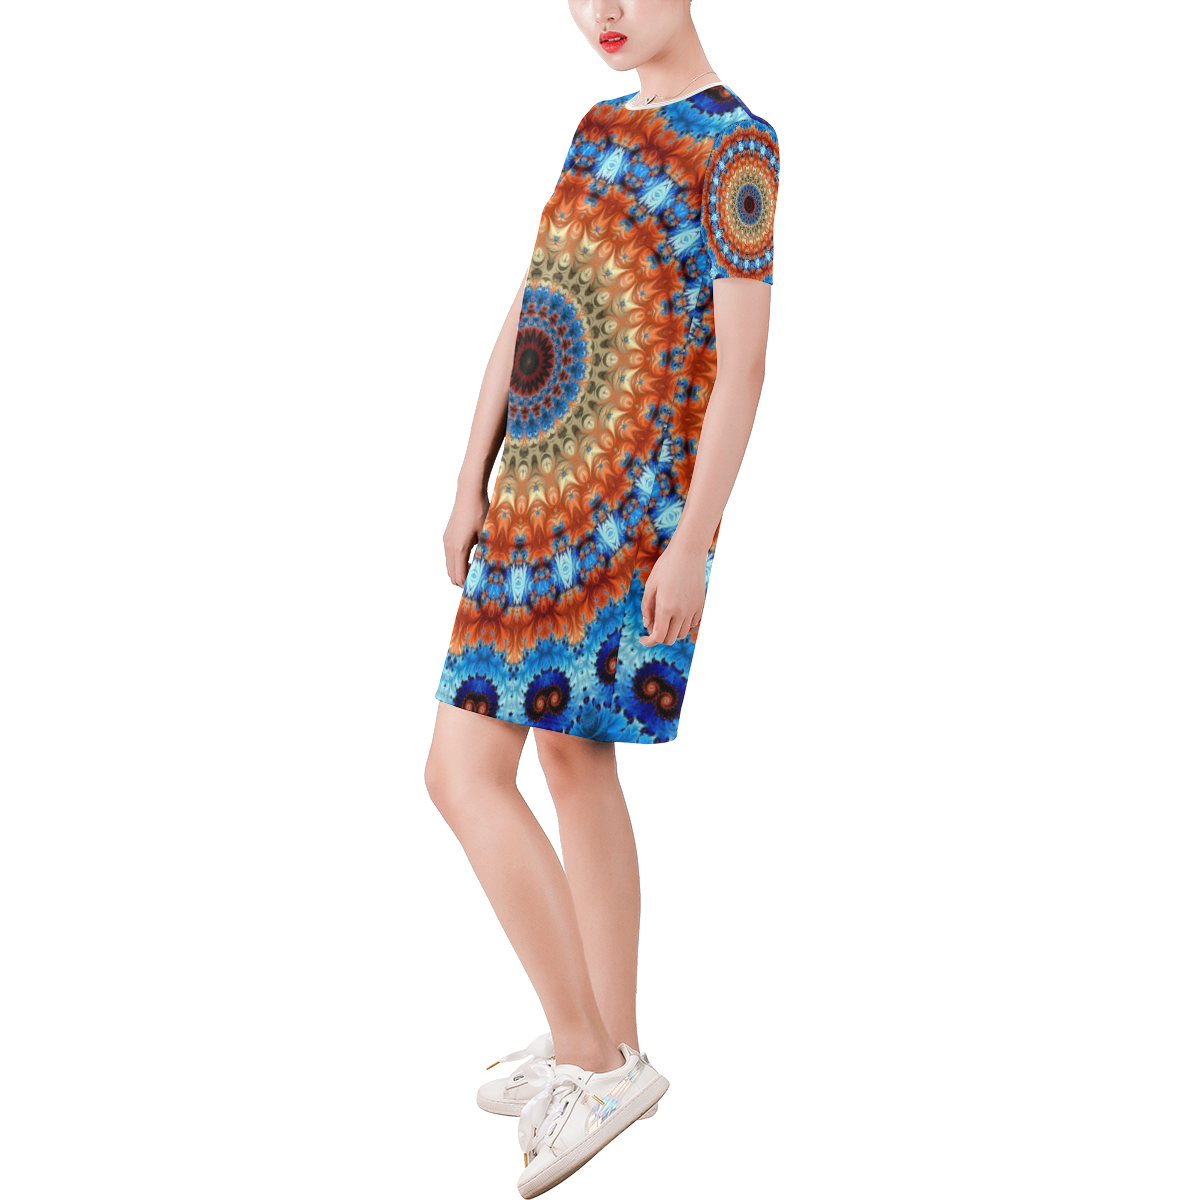 Kaleidoscope Short-Sleeve Round Neck A-Line Dress (Model D47)